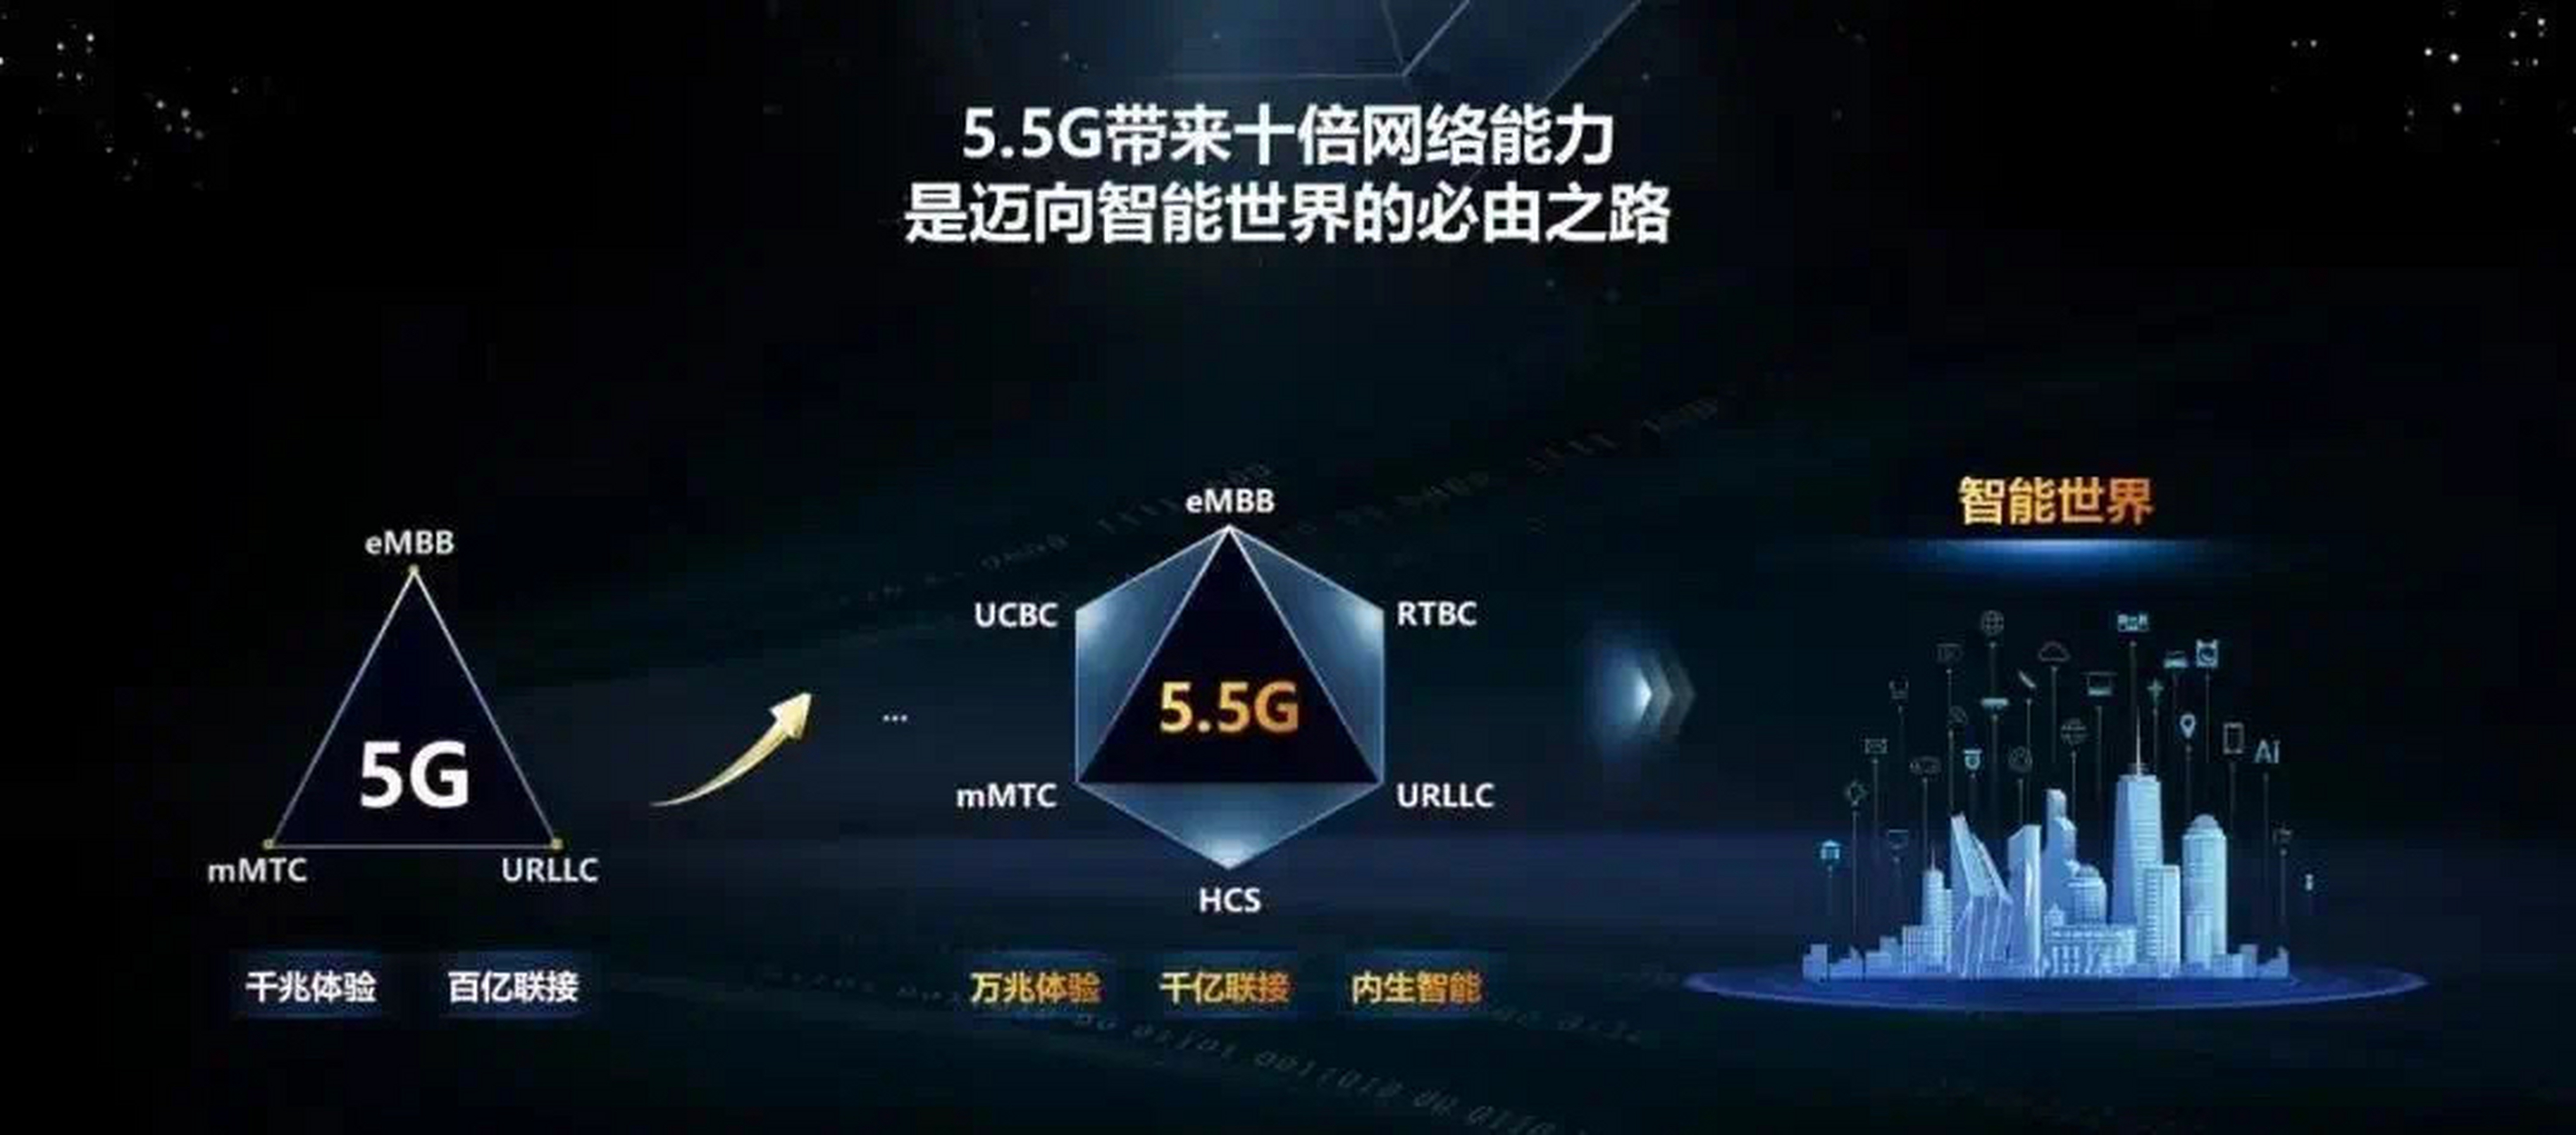 华为将发布端到端的55g商用网络,网速是当前5g网络的10倍5